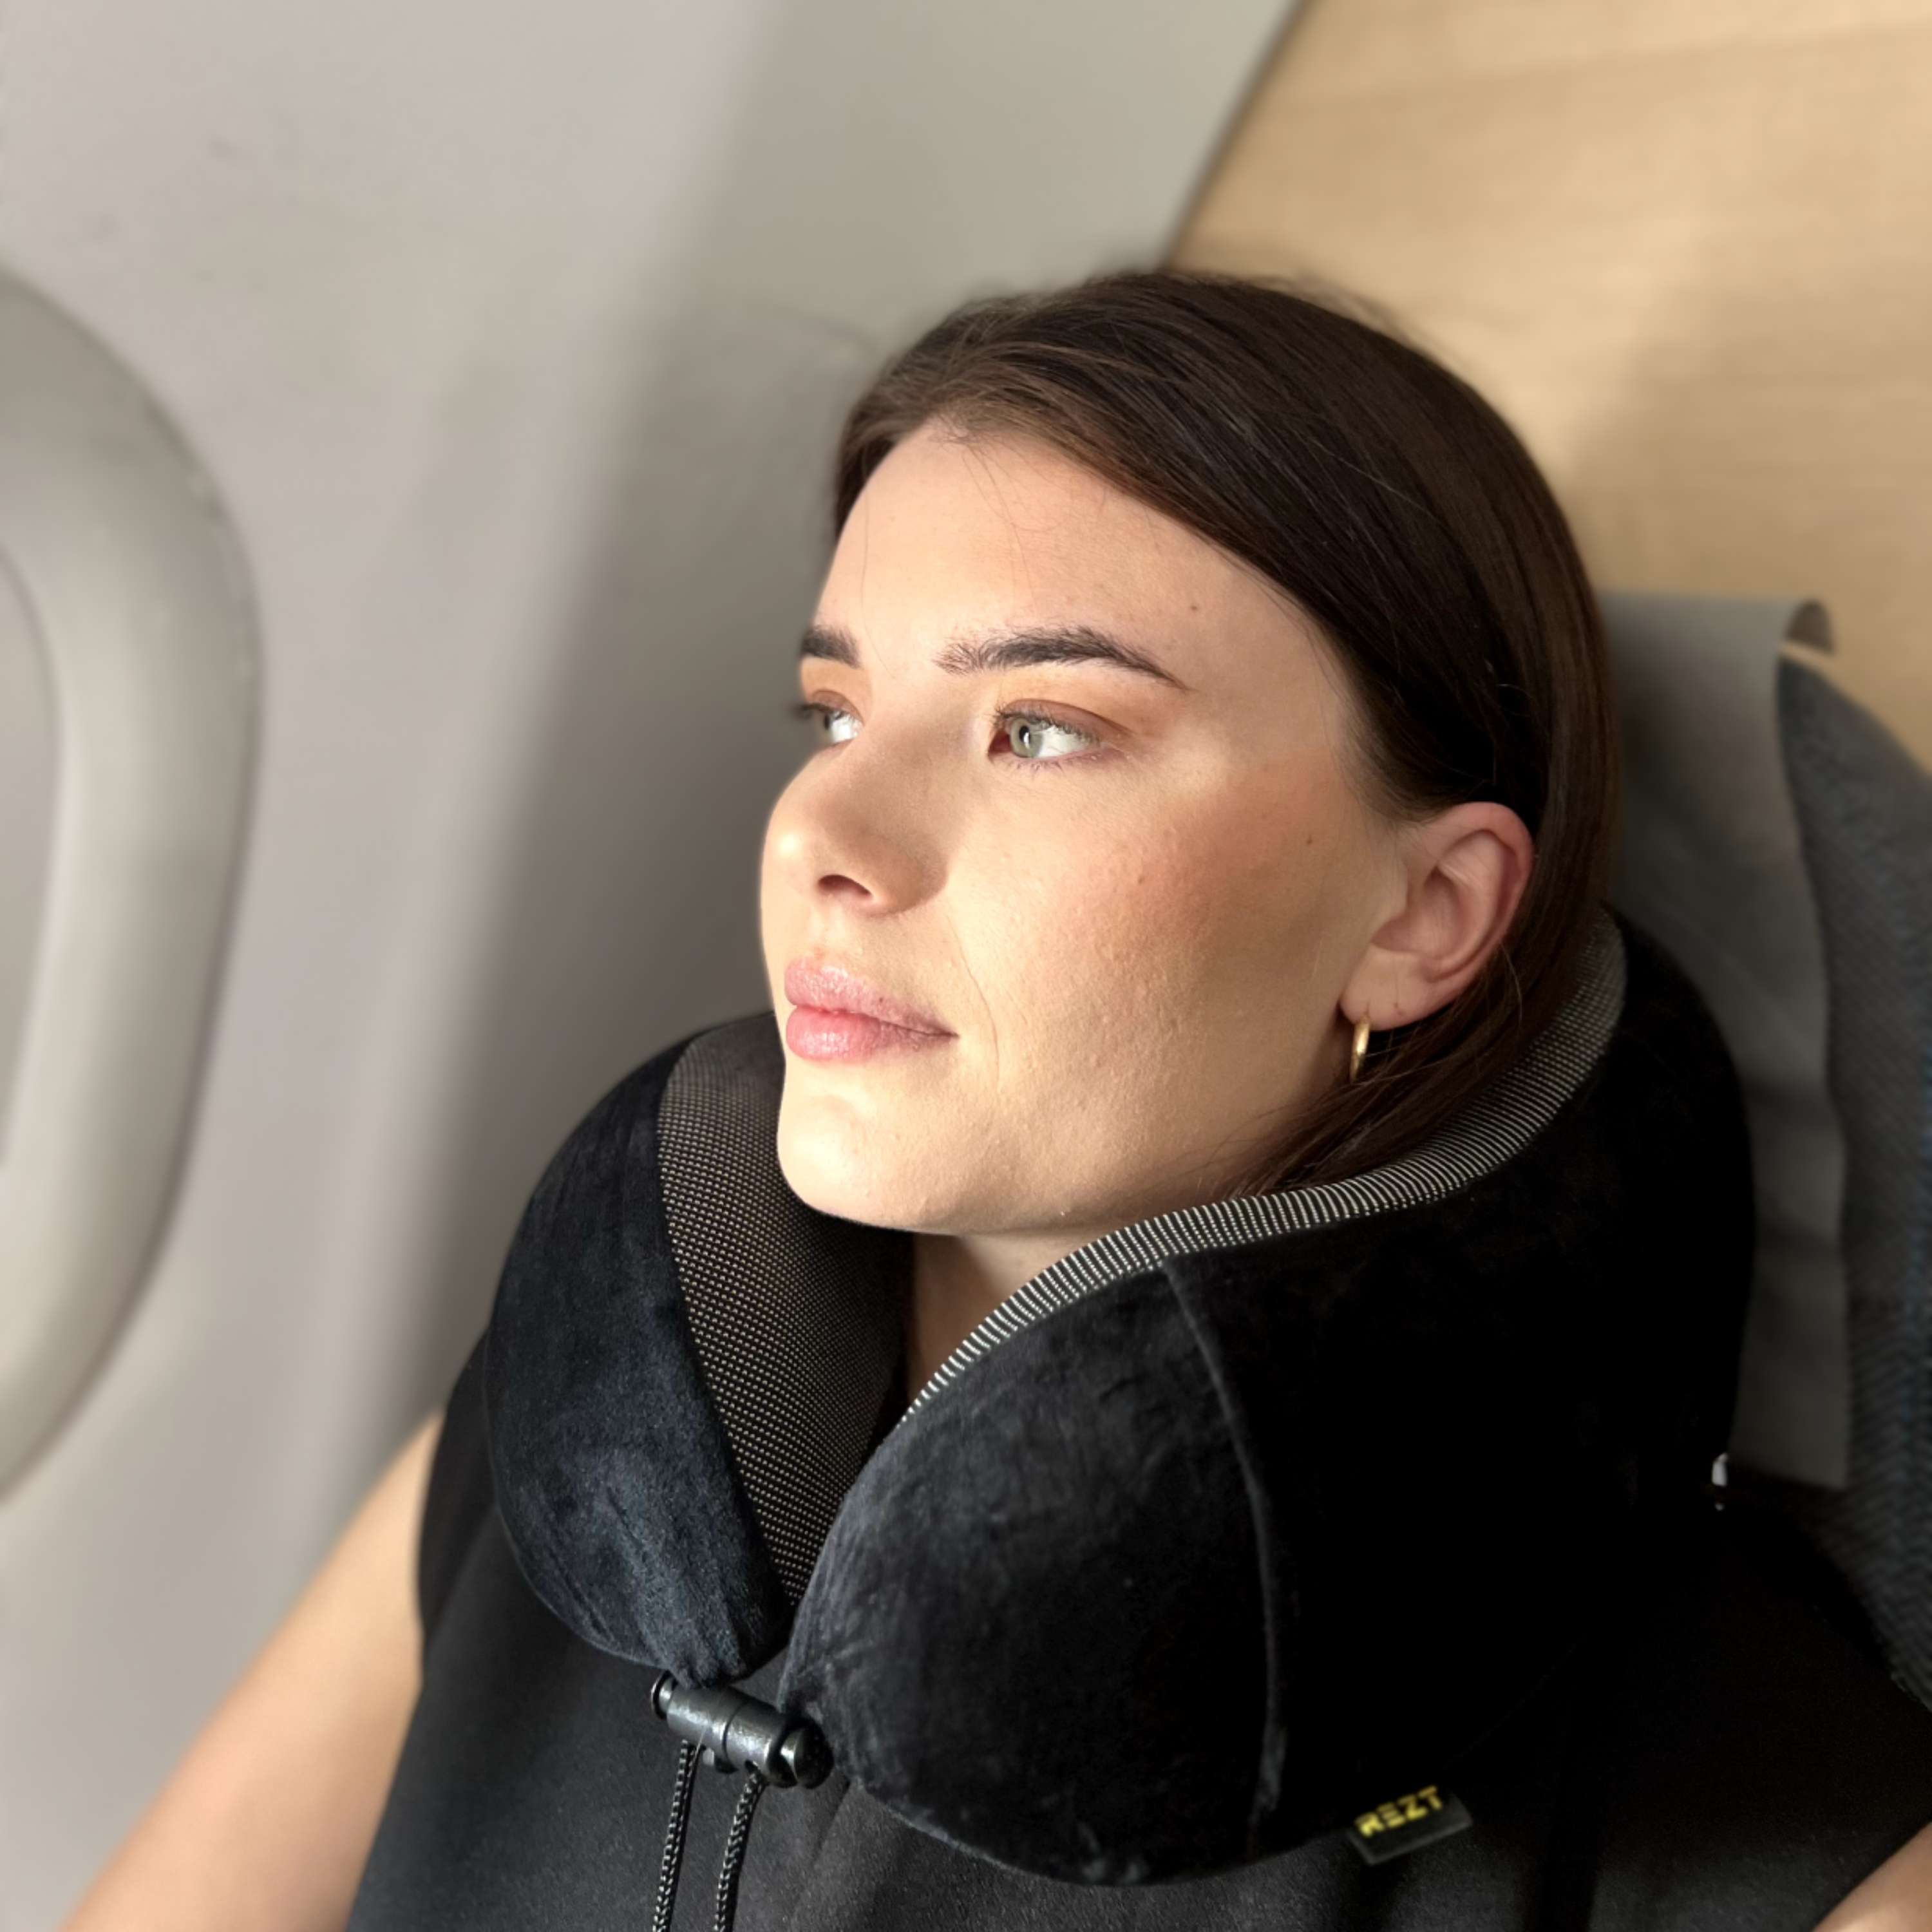 En kvinne hviler komfortabelt på et flysete, med hodet støttet av en REZT reisepute.